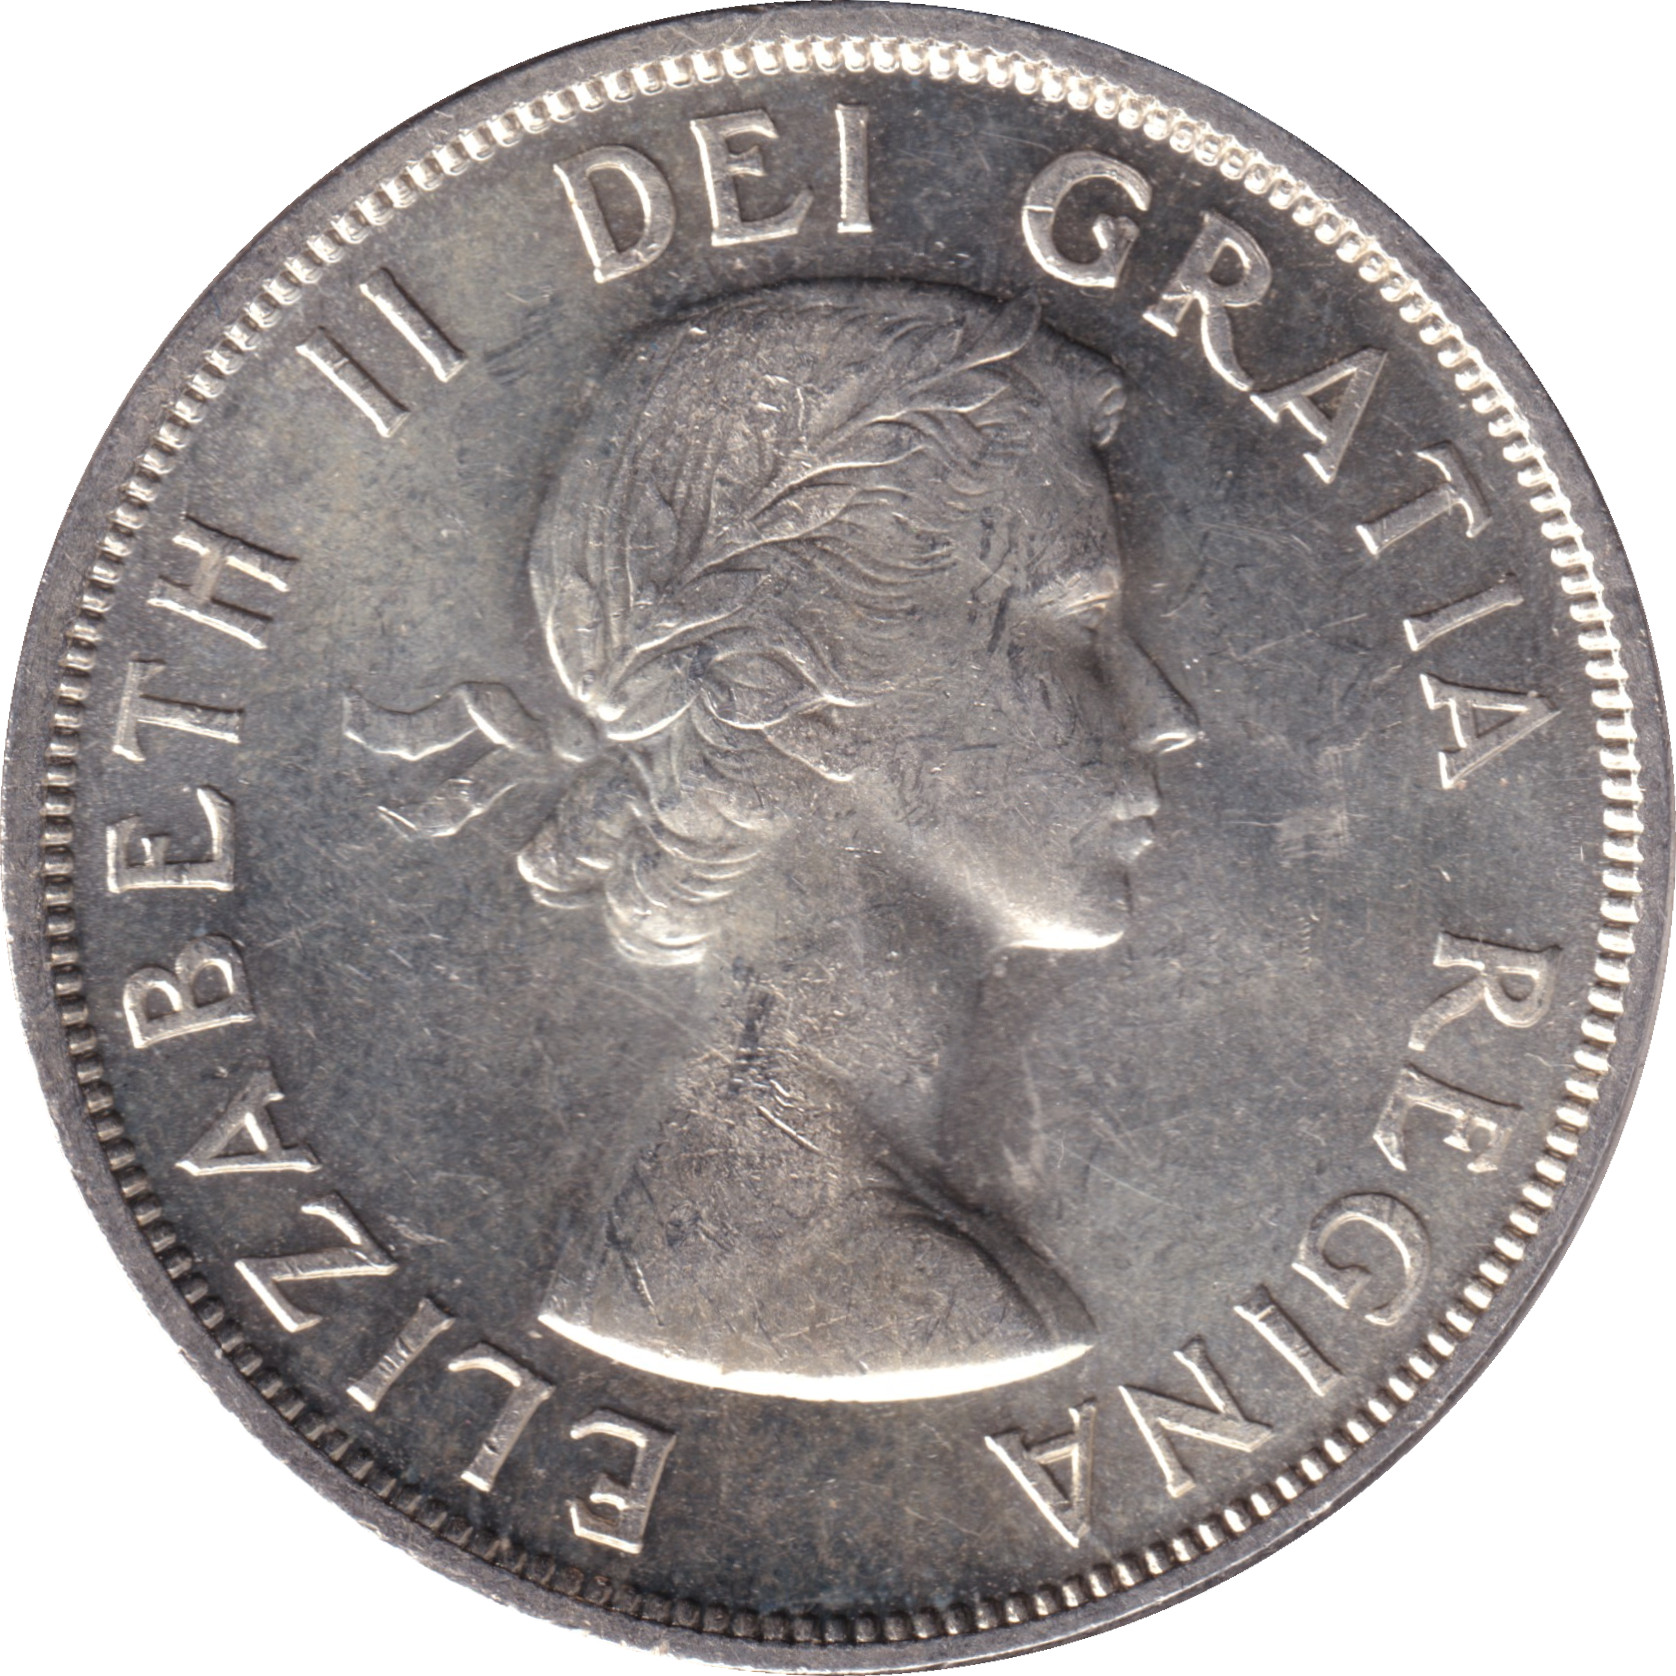 1 dollar - Elizabeth II - Buste jeune